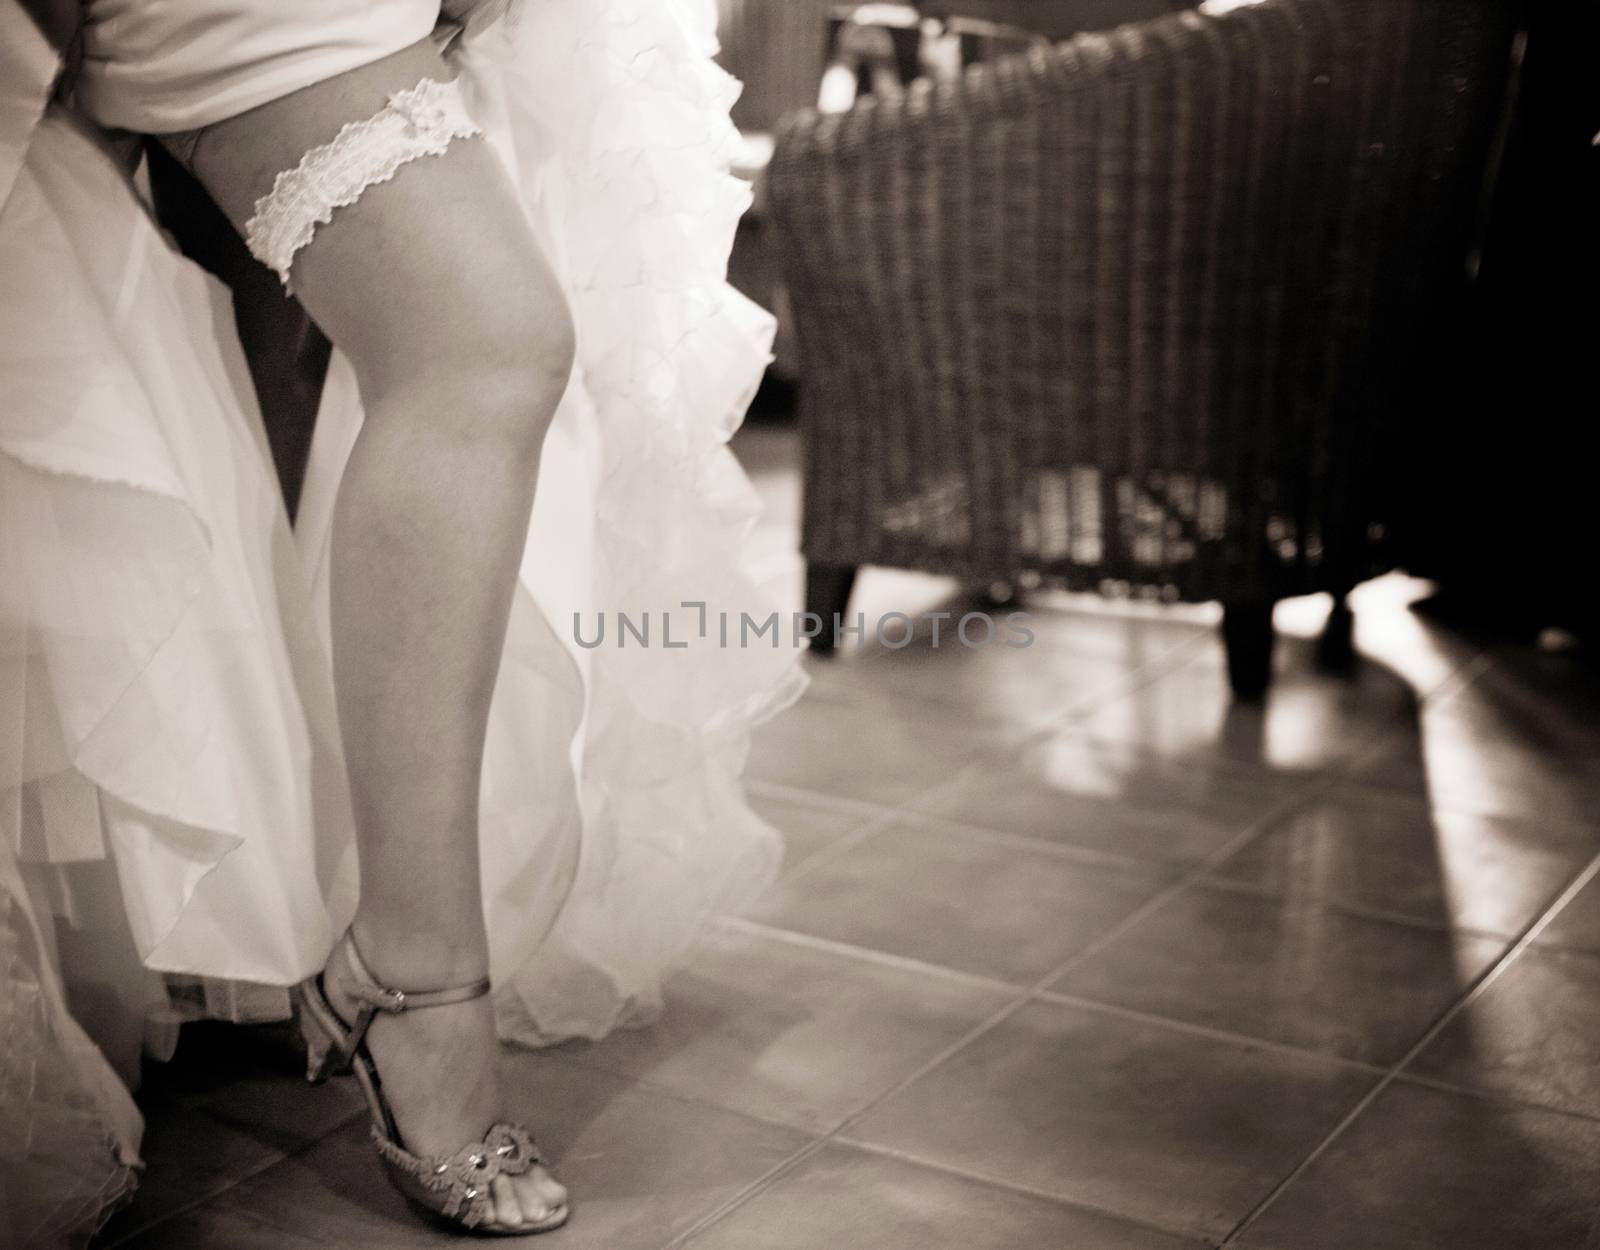 Bride in garter belt stockings by edwardolive